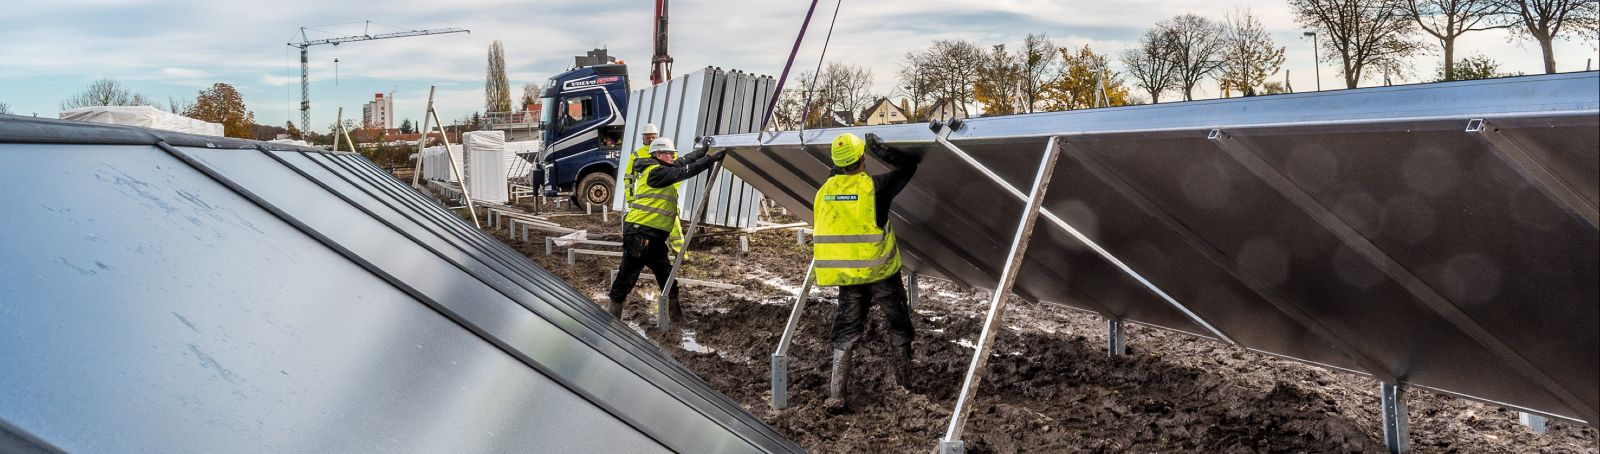 Arbeiter installieren solarthermische Anlagen.